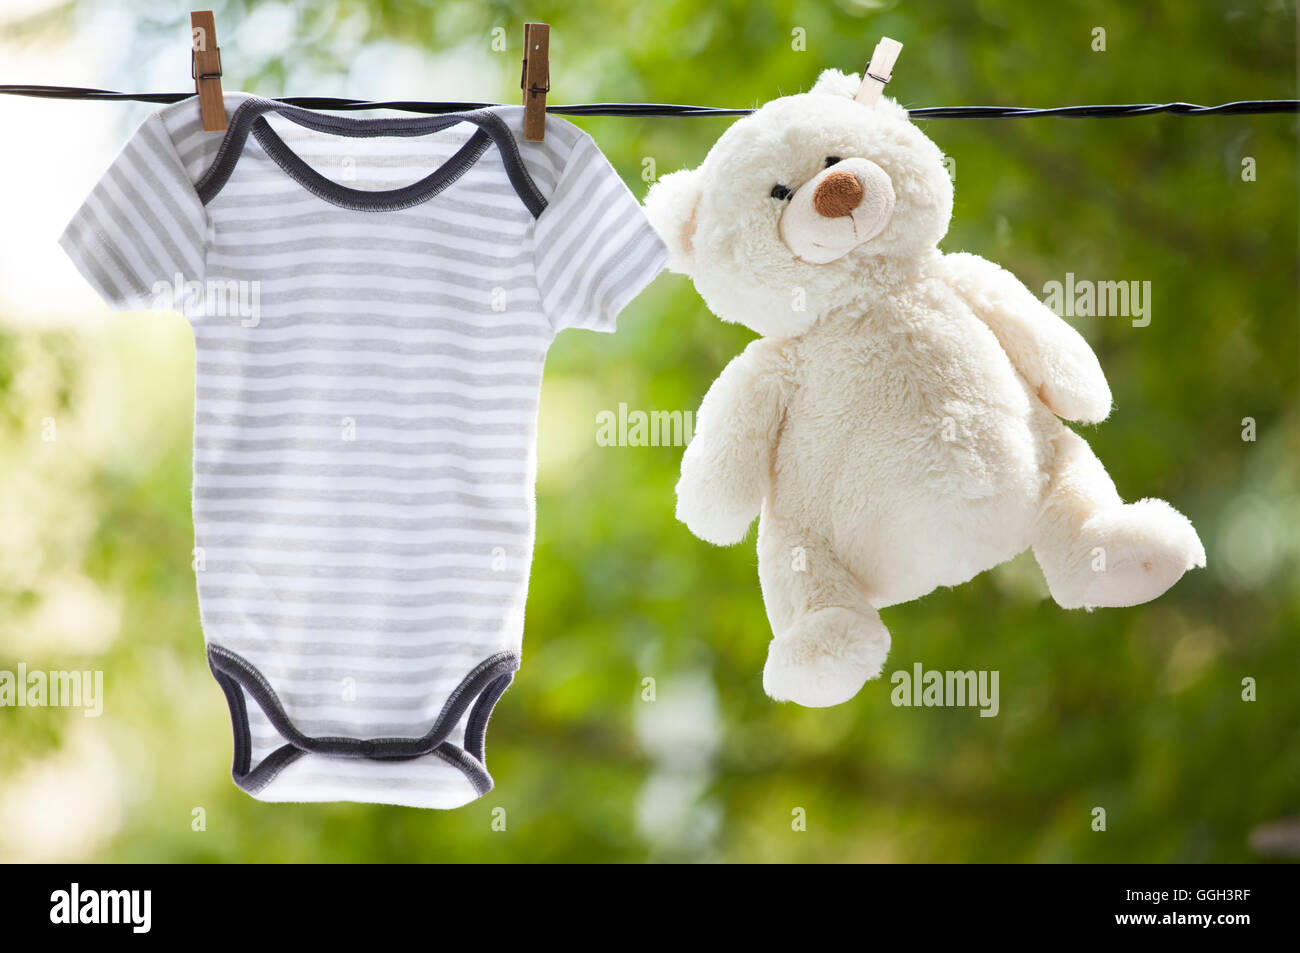 Baby-Kleidung und Teddy Bär aufhängen auf der Wäscheleine - Familienkonzept Stockfoto